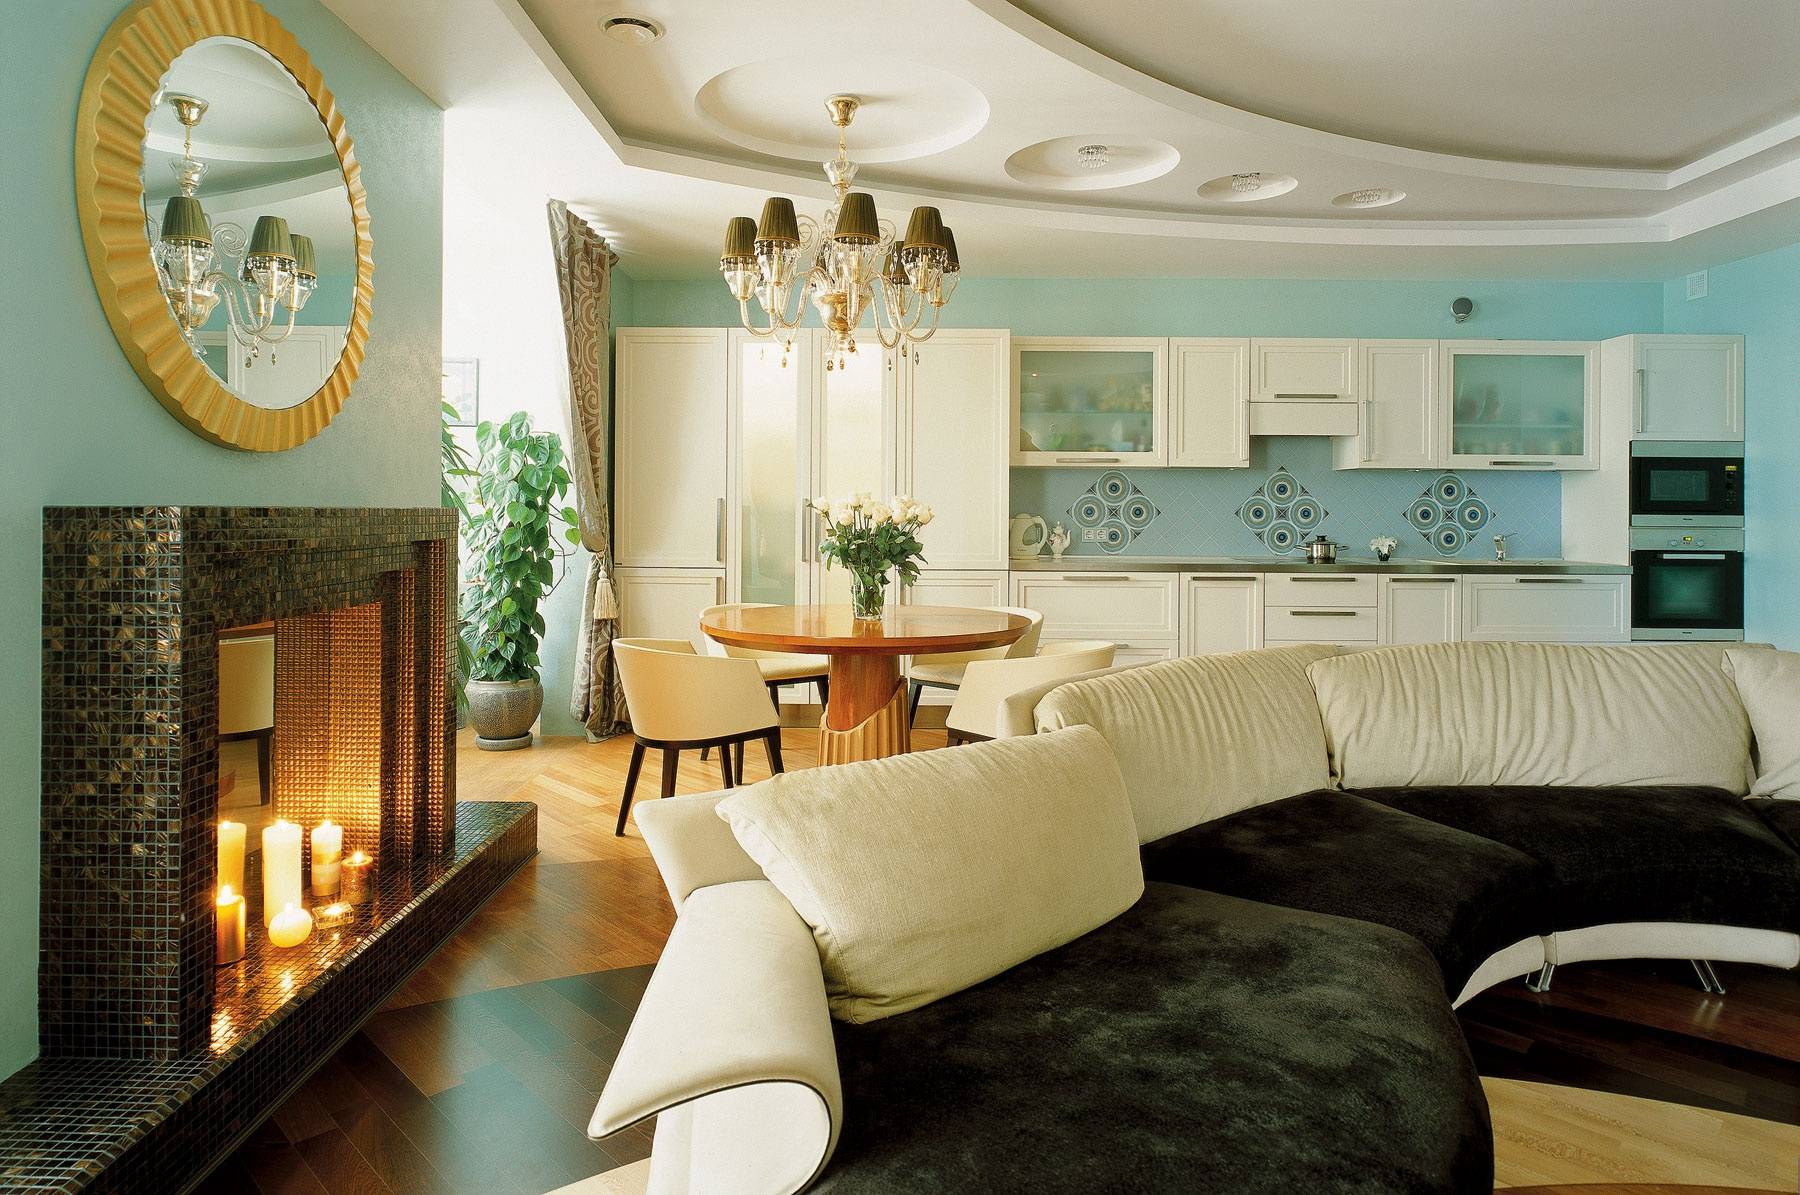 Итальянский стиль в интерьере, дизайн квартиры в итальянском современном стиле, проект гостиной